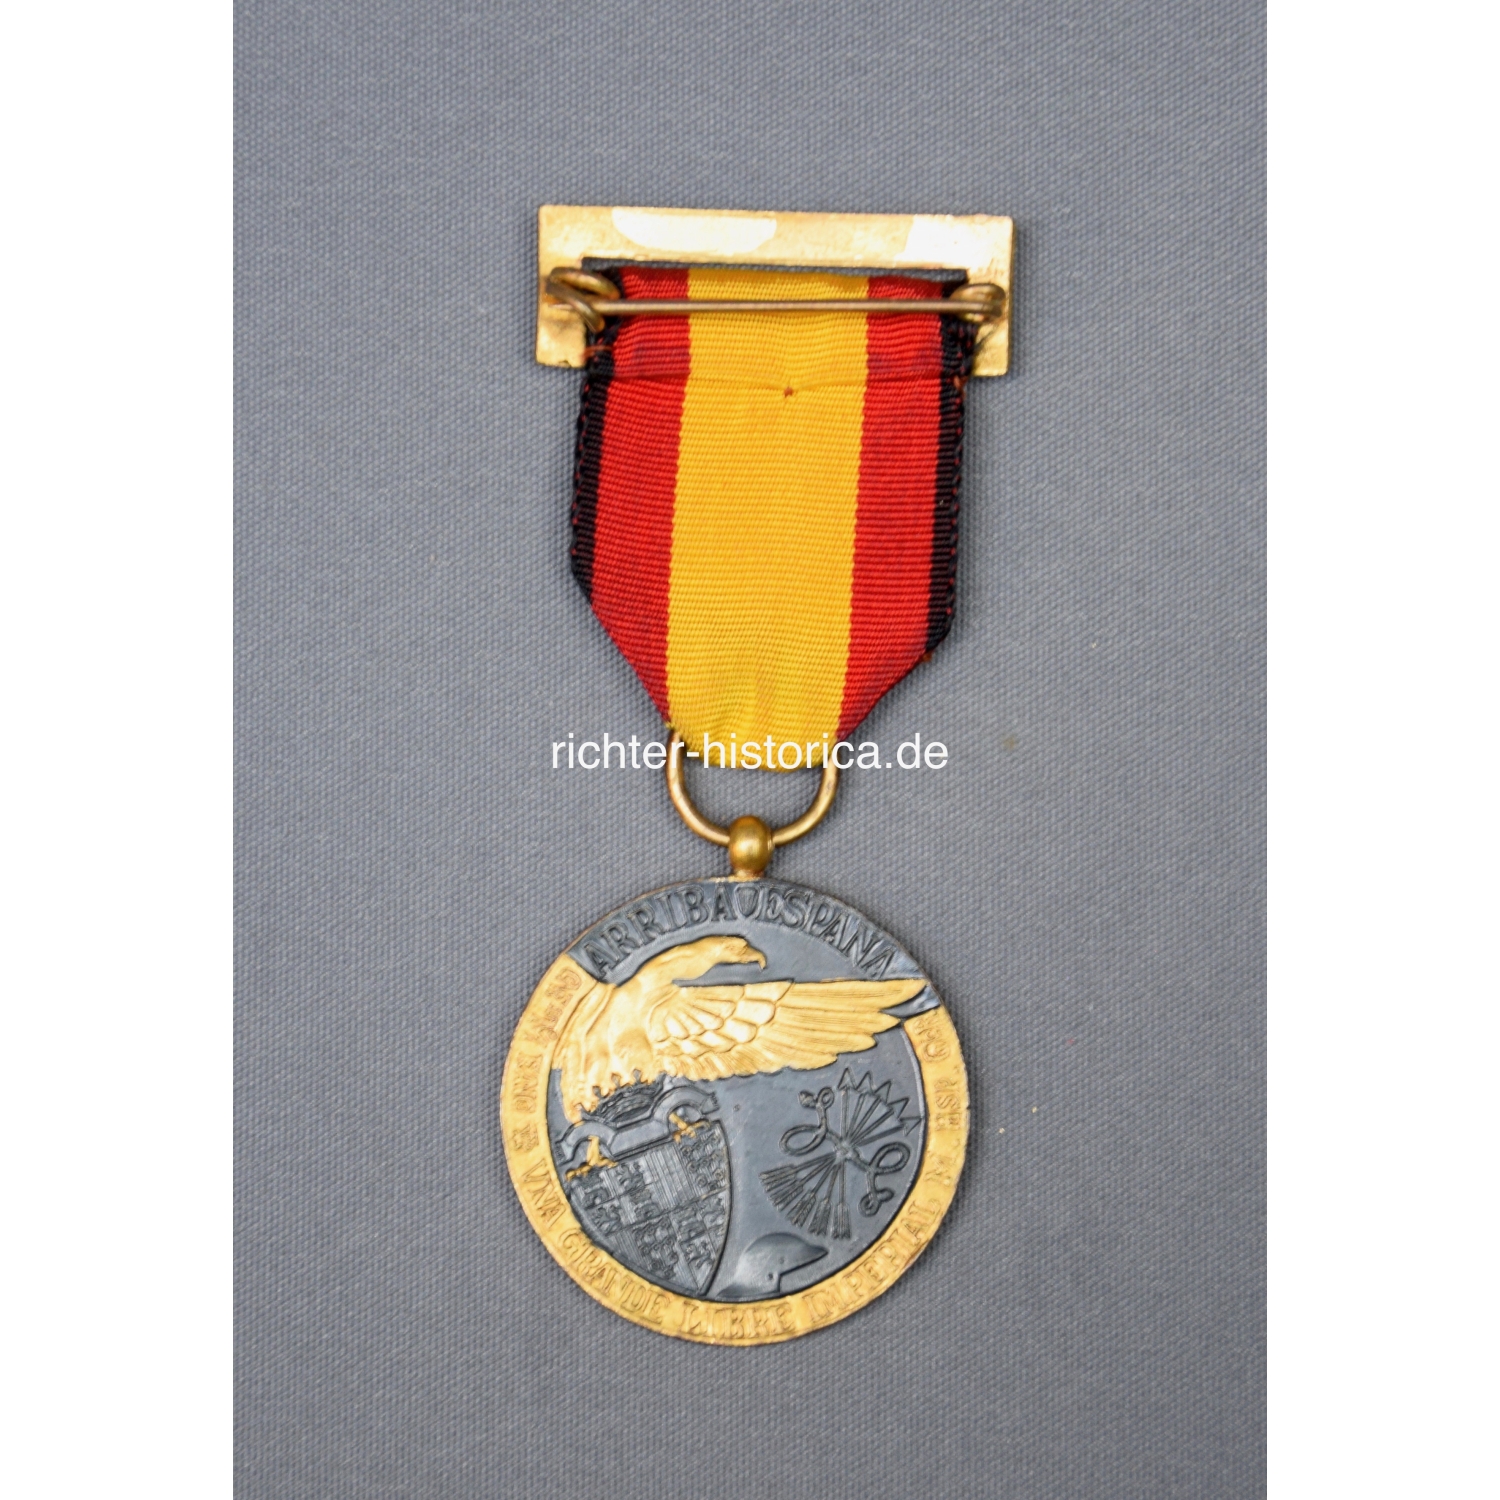 Spanien Medaille 1936, ein großes freies Imperial über Spanien